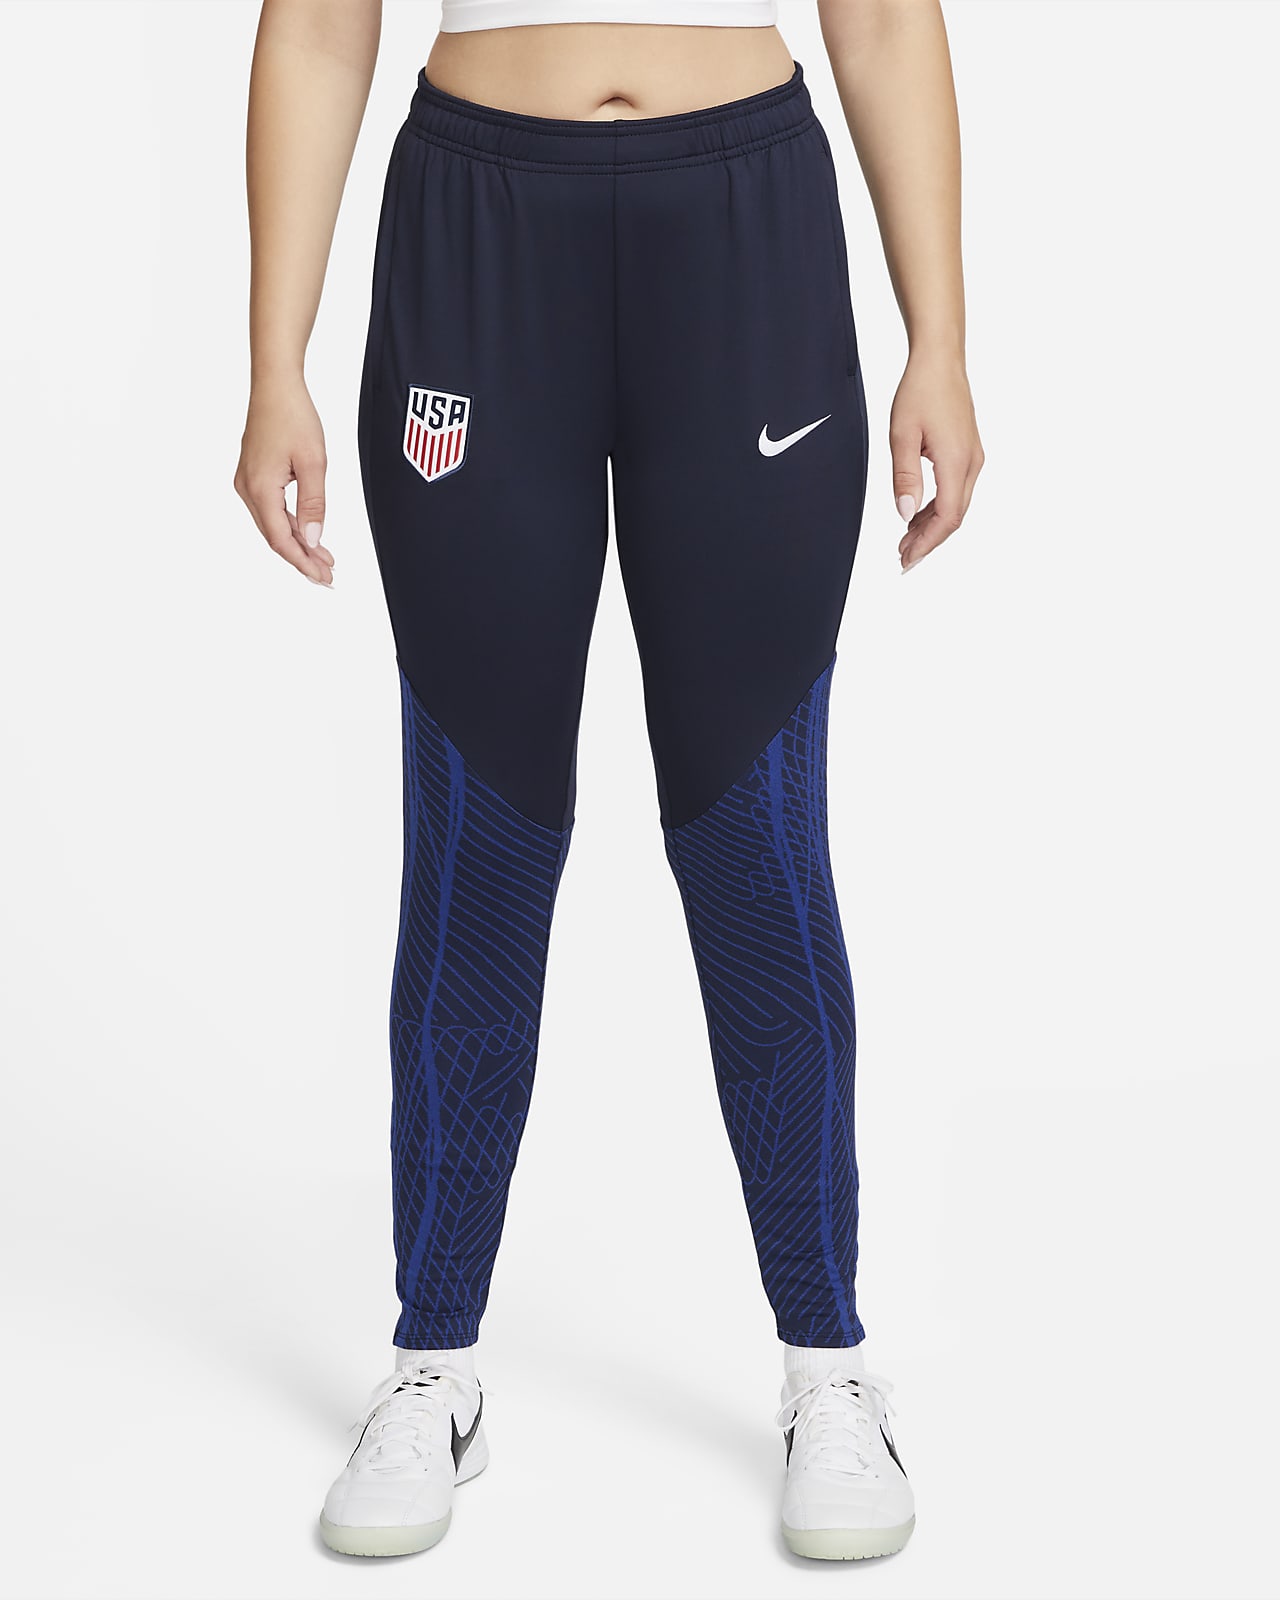 Holgado Entrenamiento & gym Poliéster reciclado Pants de entrenamiento.  Nike US